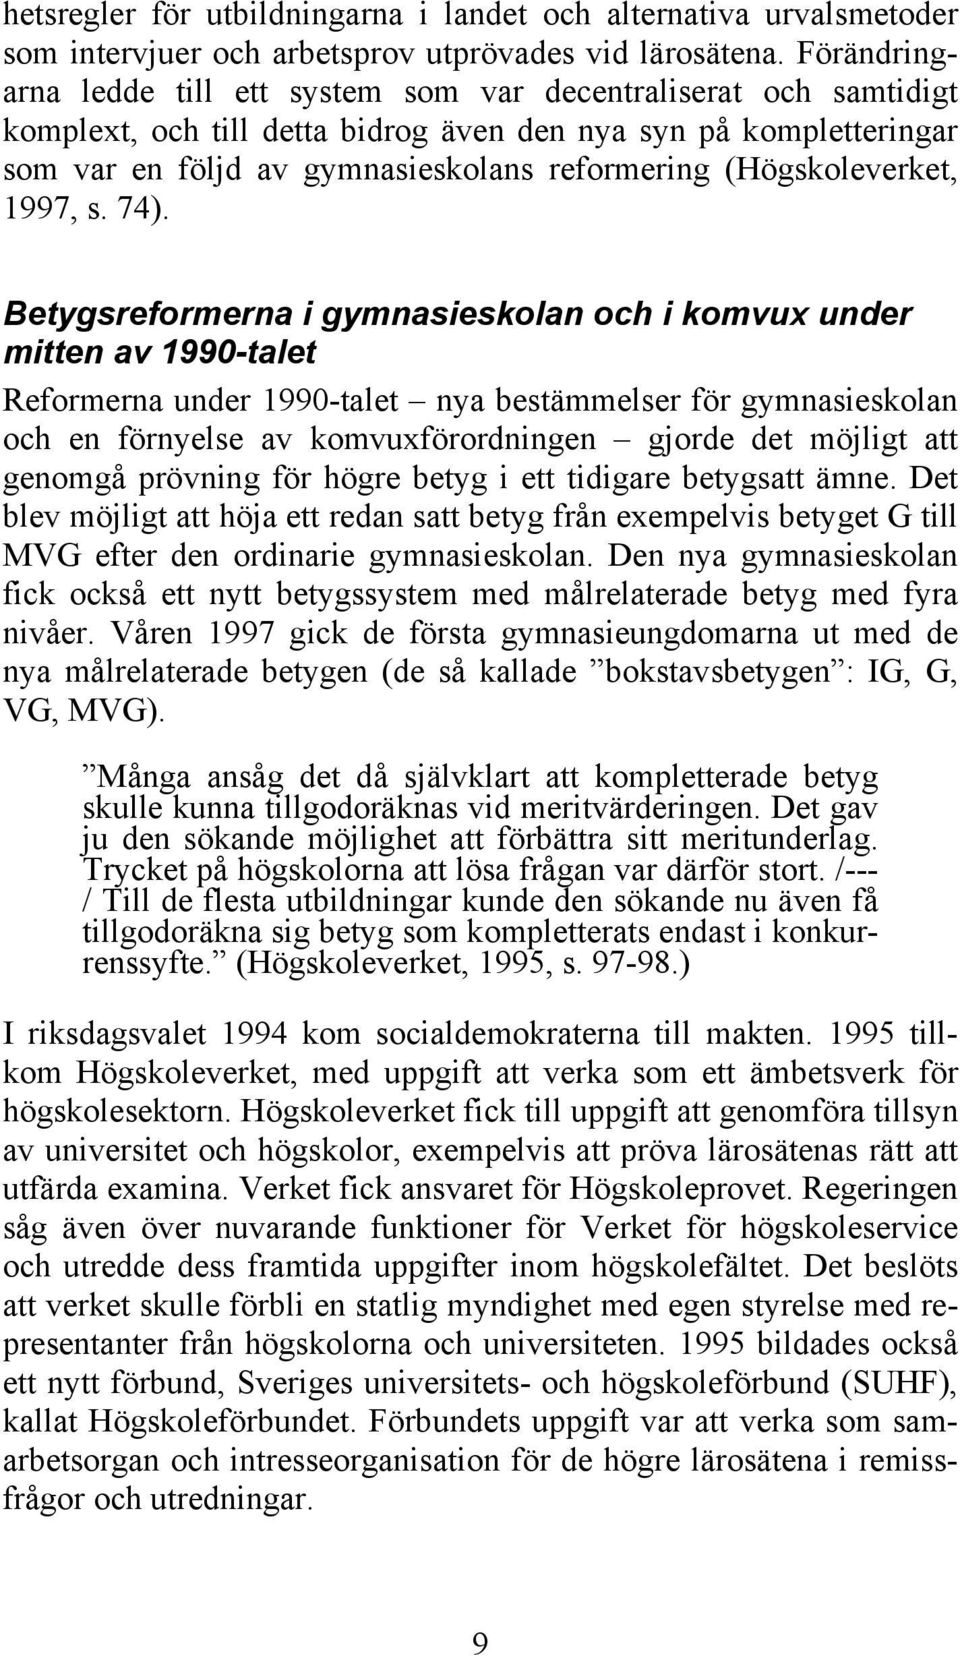 (Högskoleverket, 1997, s. 74).